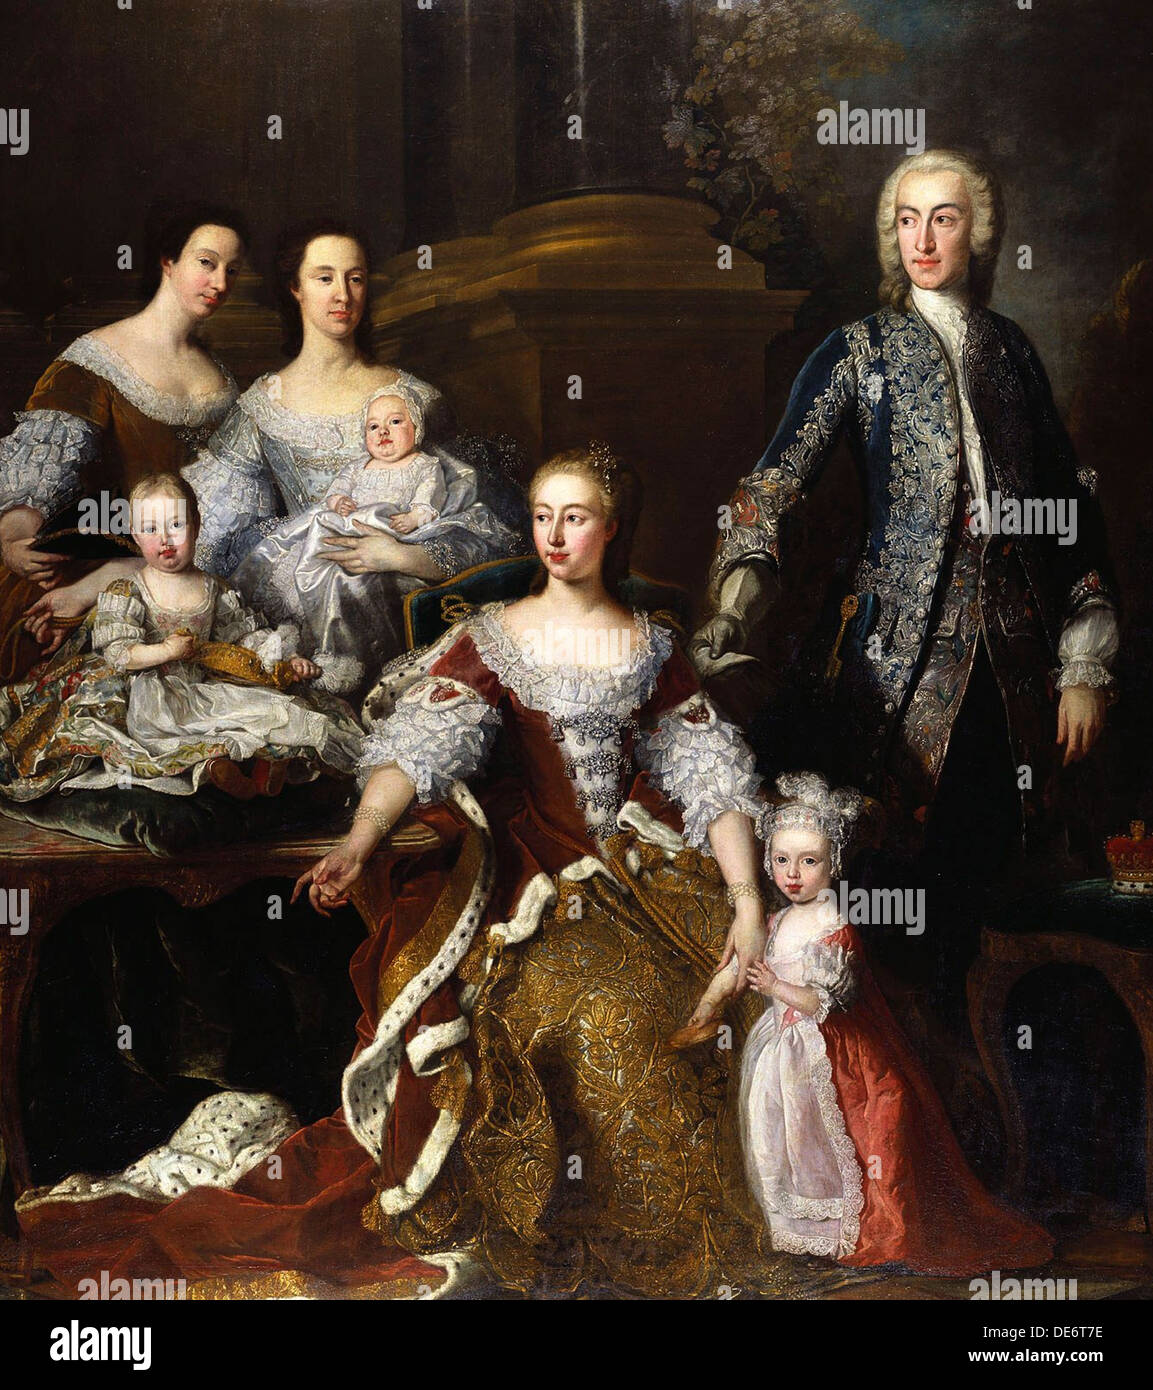 Augusta de Sax-Gotha, Princesa de Gales, con miembros de su familia y hogar, 1739. Artista: Van Loo, Jean Baptiste (1684-1745) Foto de stock